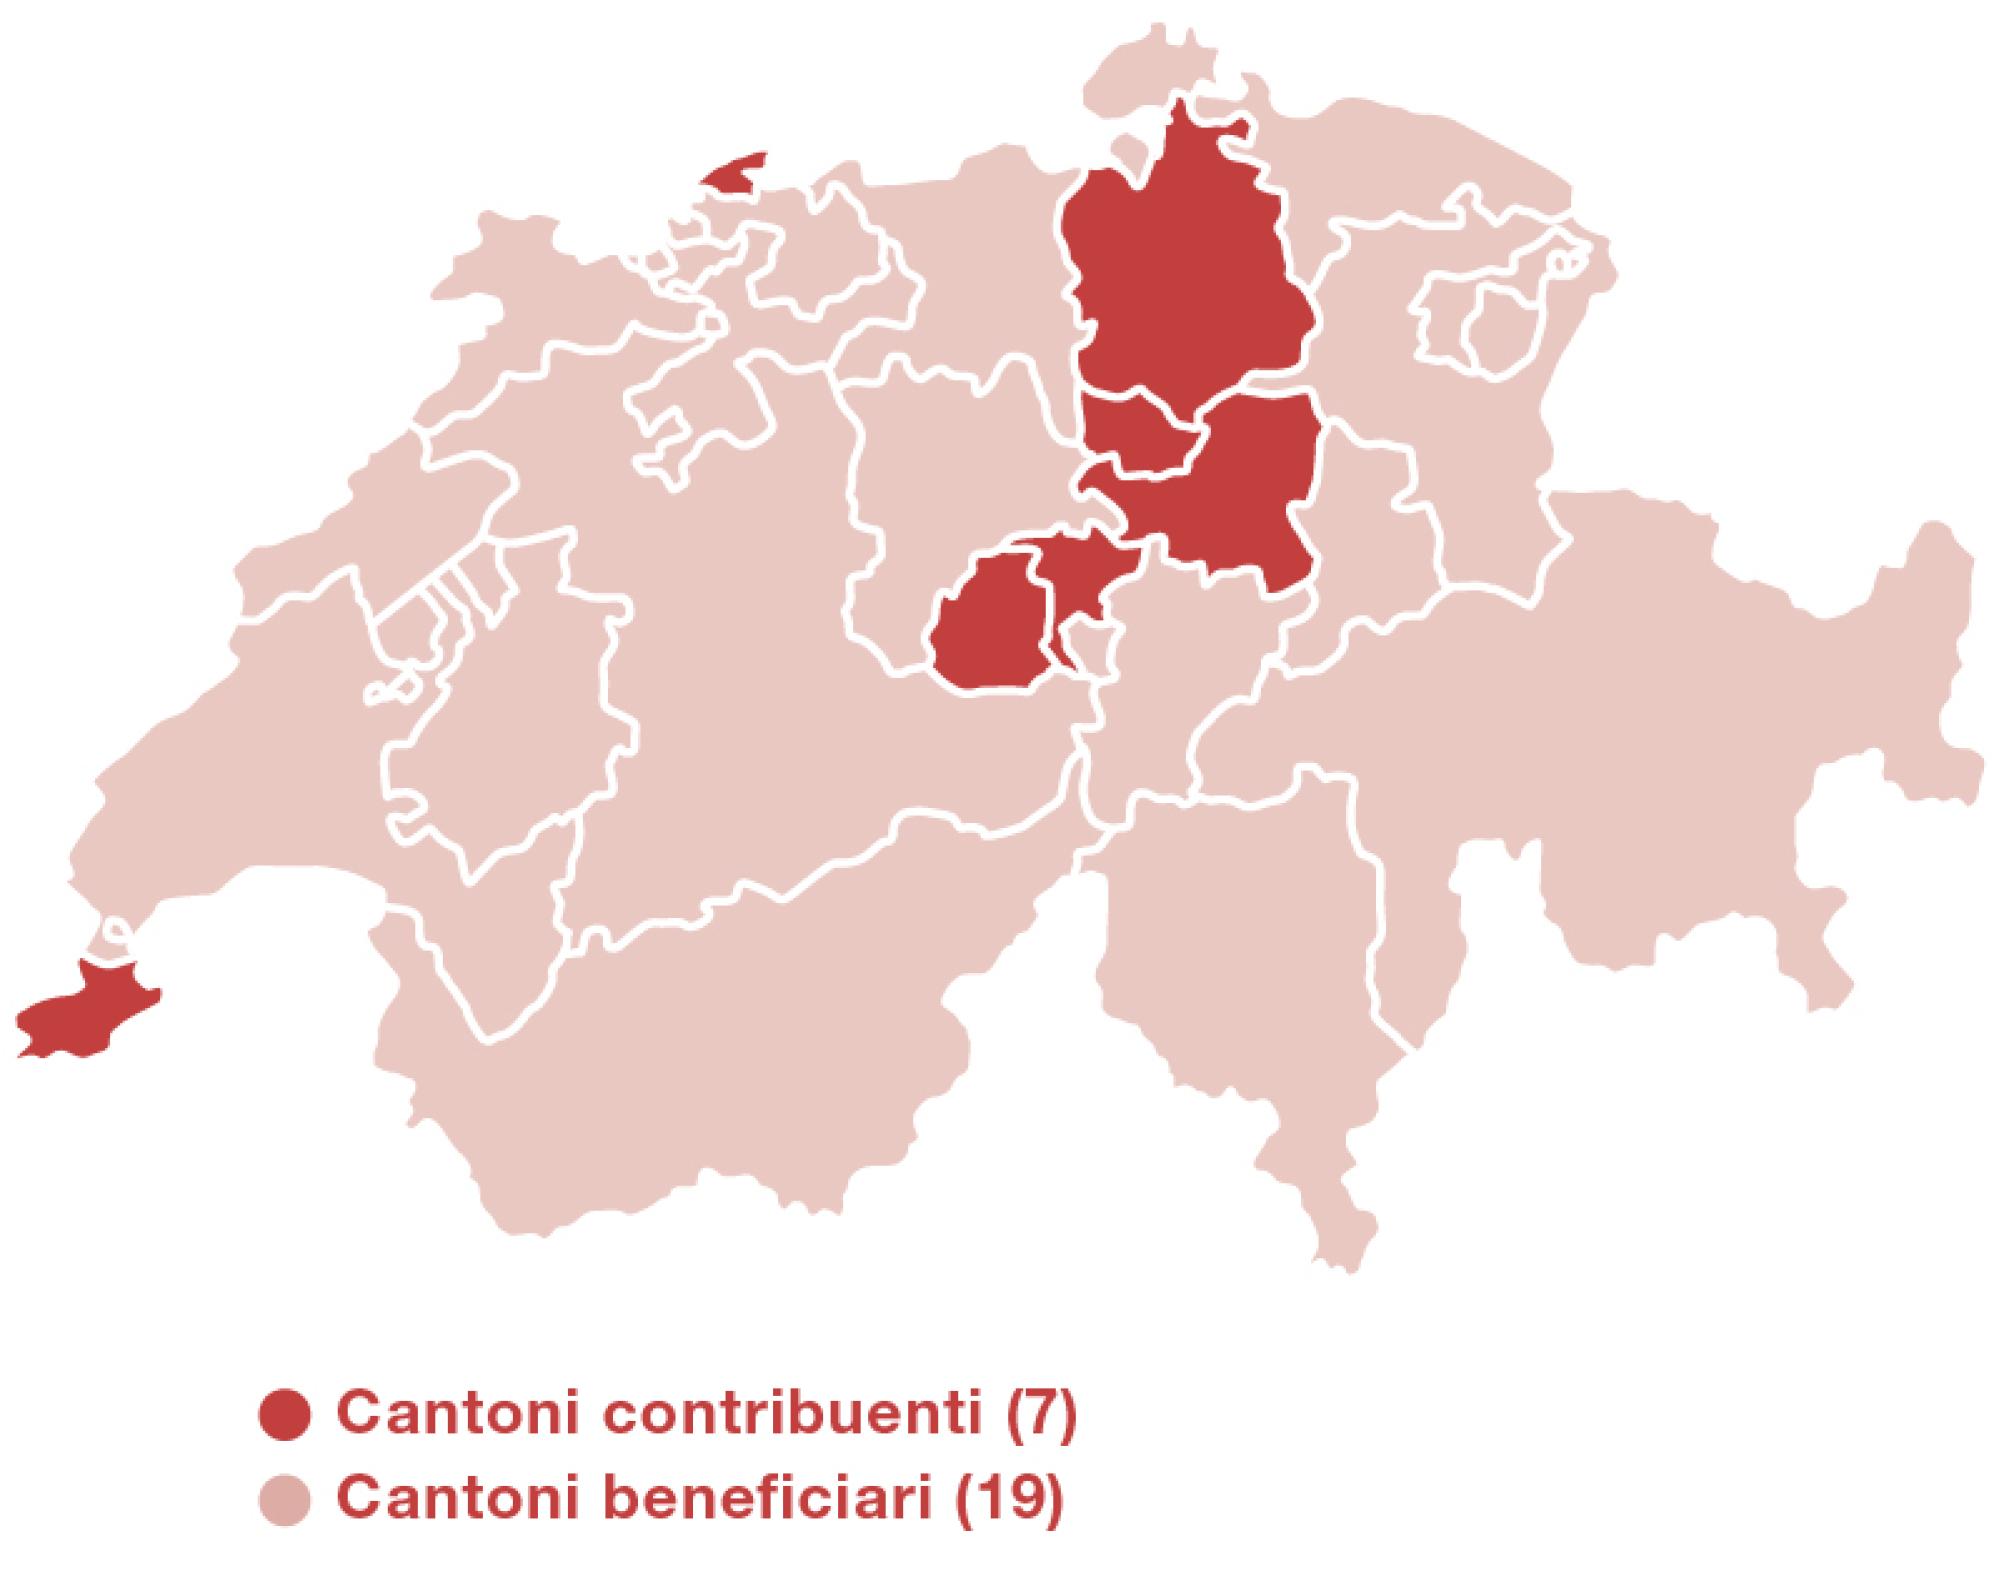 Carta della Svizzera con i contorni dei Cantoni. I cantoni contributori sono contrassegnati in scuro. Si tratta di Zugo, Svitto, Nidvaldo, Ginevra, Basilea Città, Zurigo e Obvaldo.